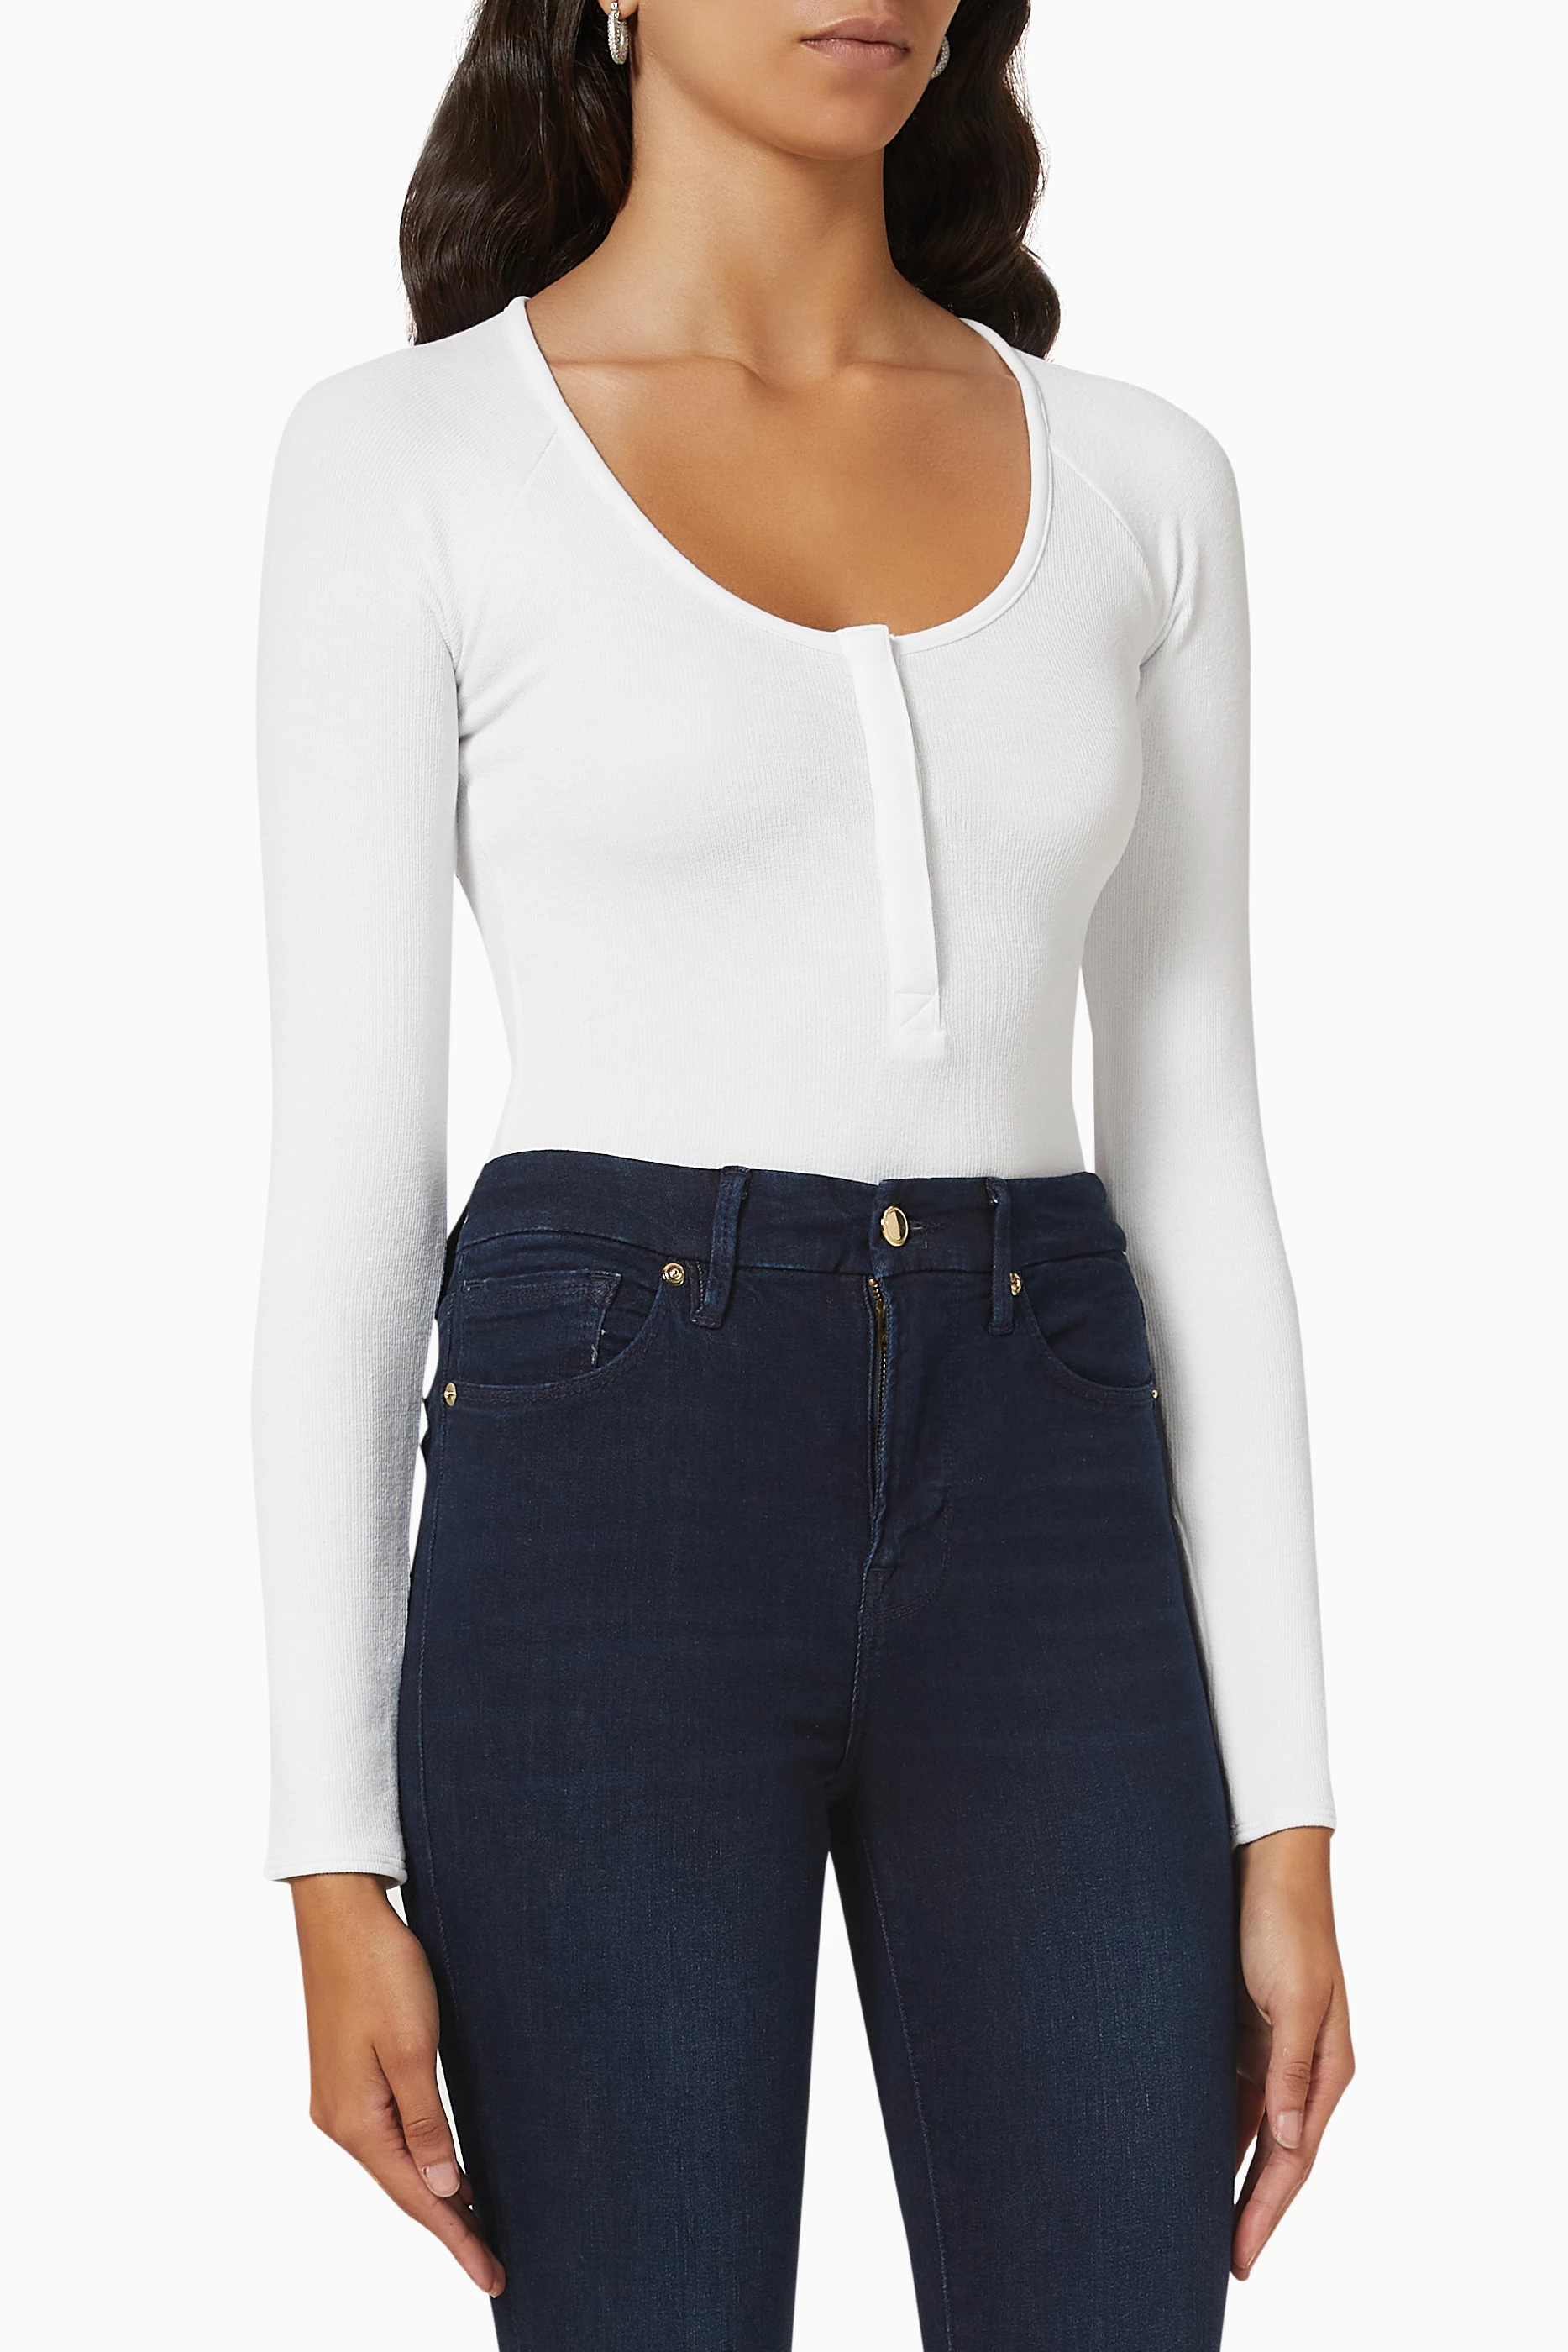 Buy Good American White Feel Good Long Sleeve Bodysuit in Cotton Jersey for  Women in UAE